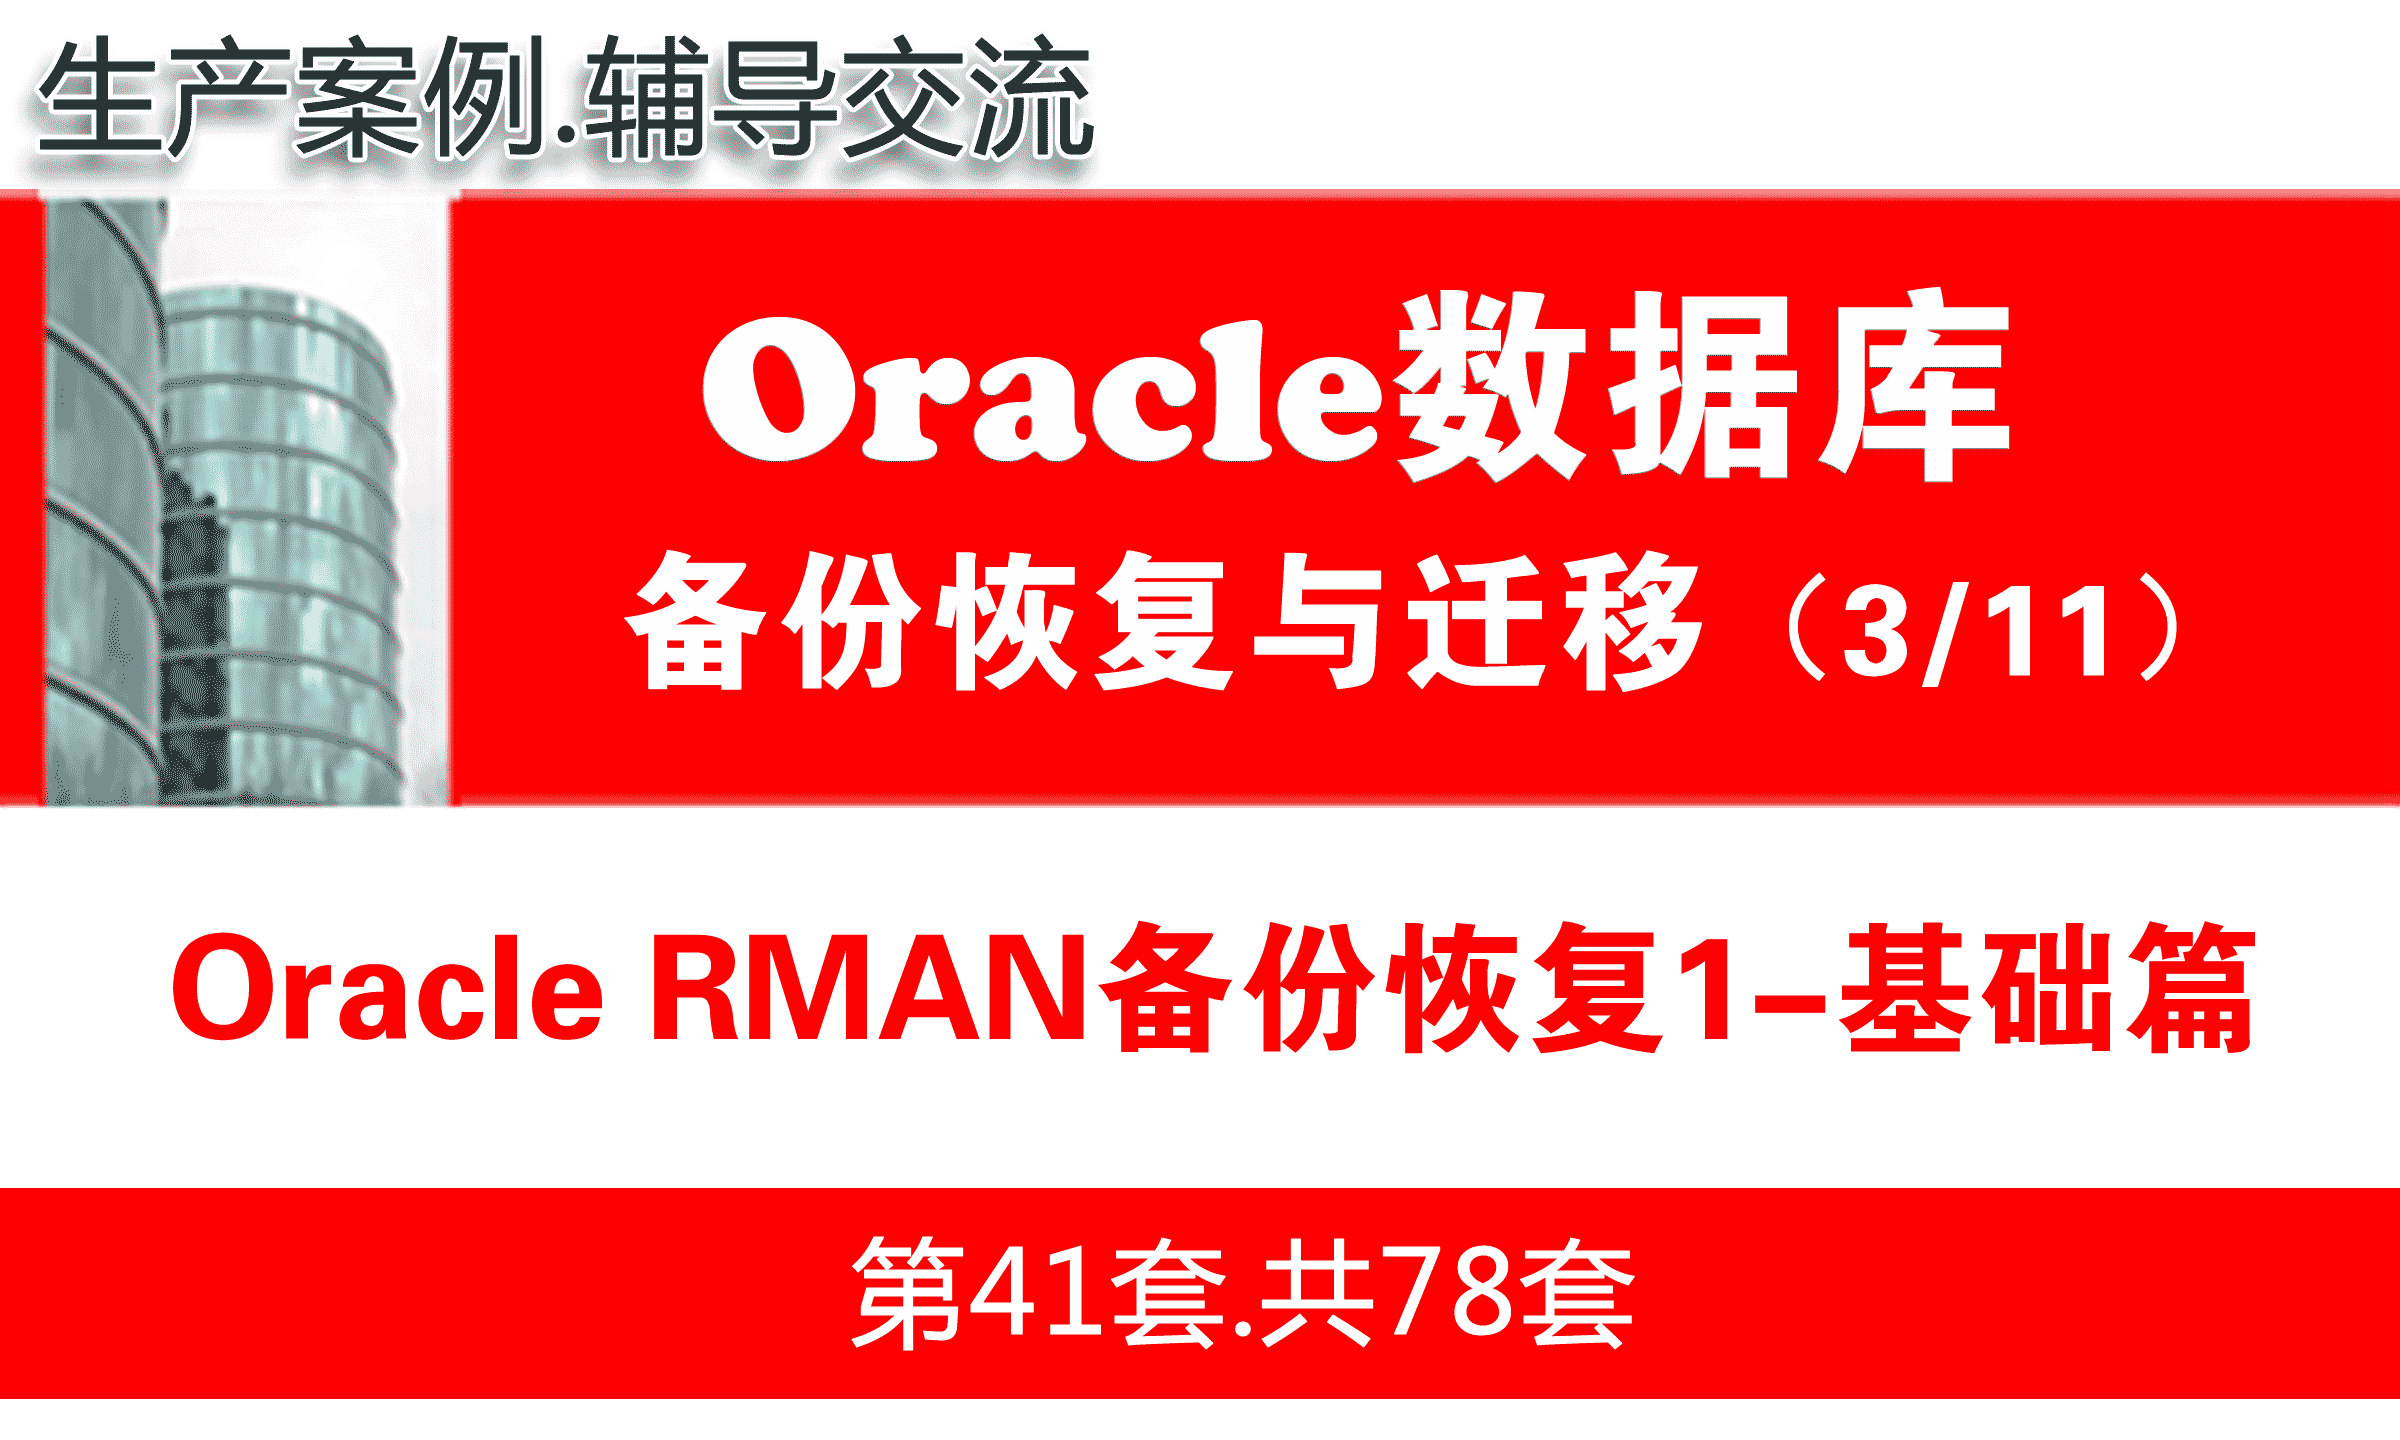 Oracle RMAN备份恢复1（基础篇）_Oracle备份恢复与数据迁移教程03